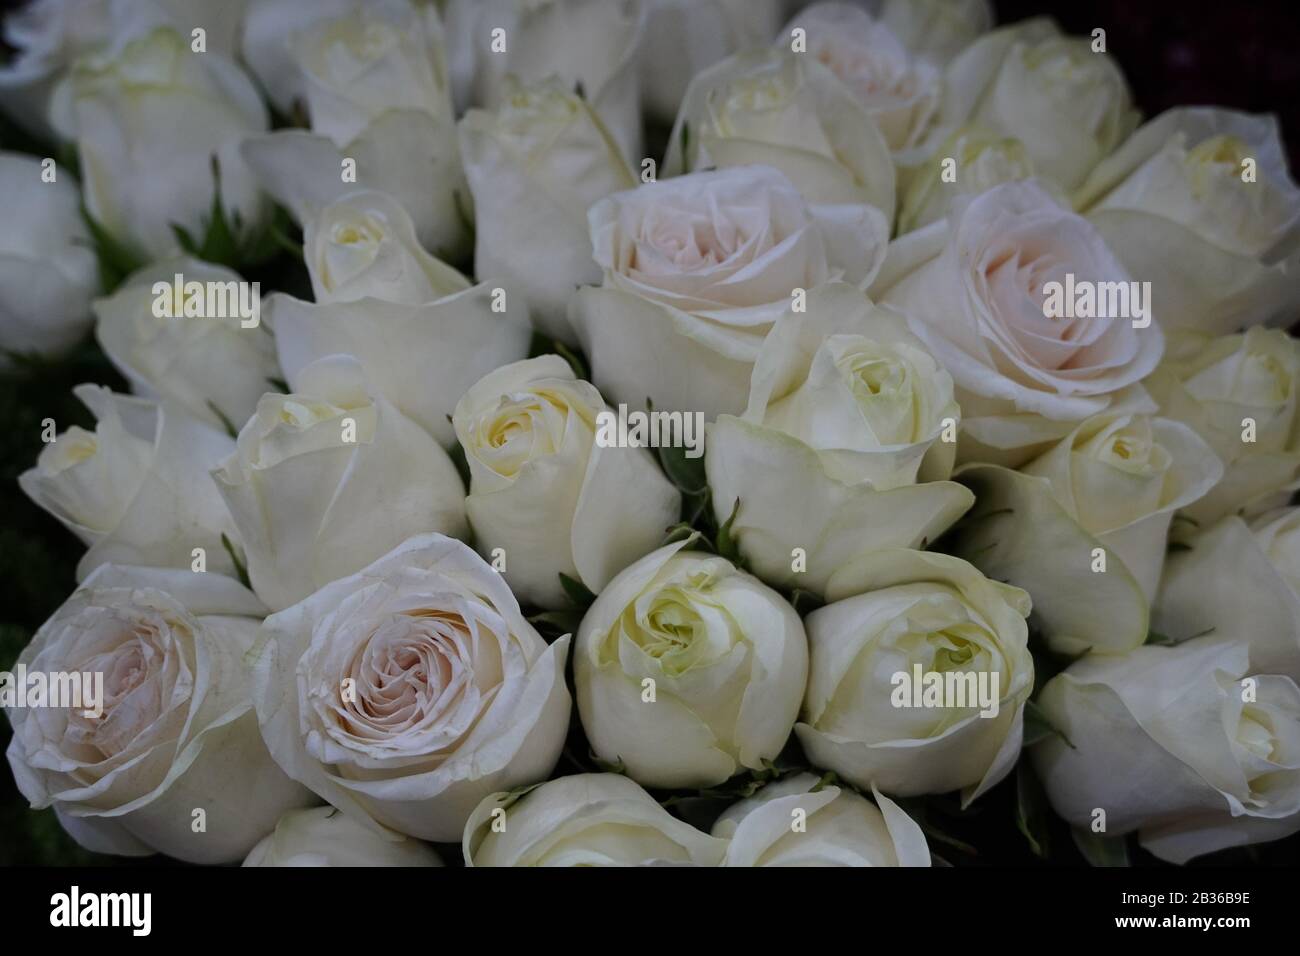 Fond Roses Blanches. Variété de roses blanches dans le beau bouquet.  Bouquet de mariée de rose blanche dans des couleurs vives dans la boutique  de fleurs sur le marché Photo Stock -